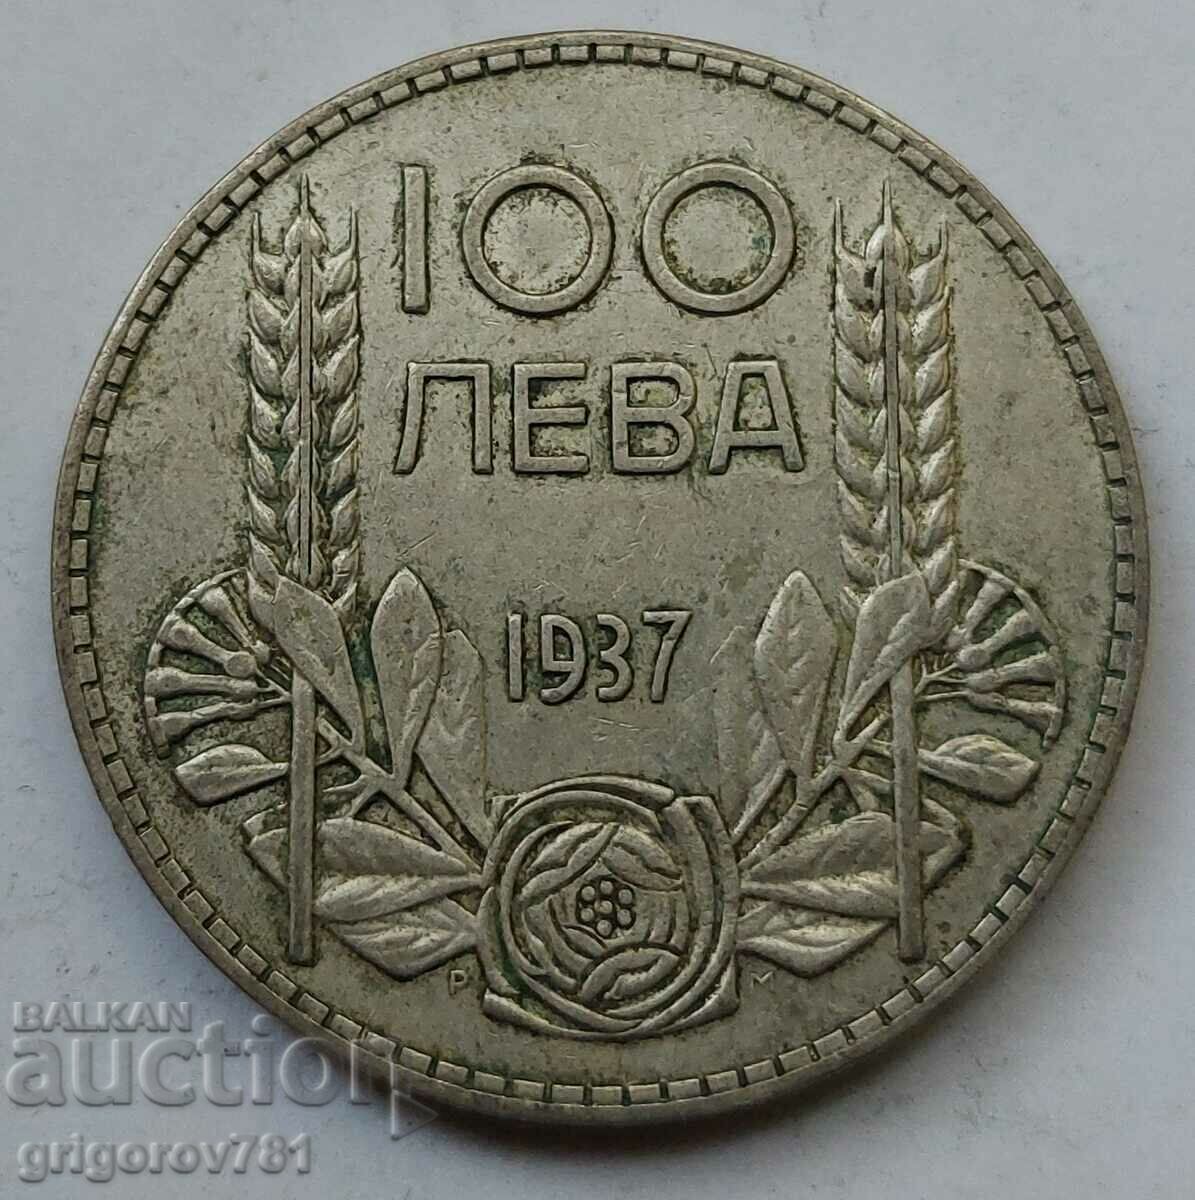 Ασήμι 100 λέβα Βουλγαρία 1937 - ασημένιο νόμισμα #78